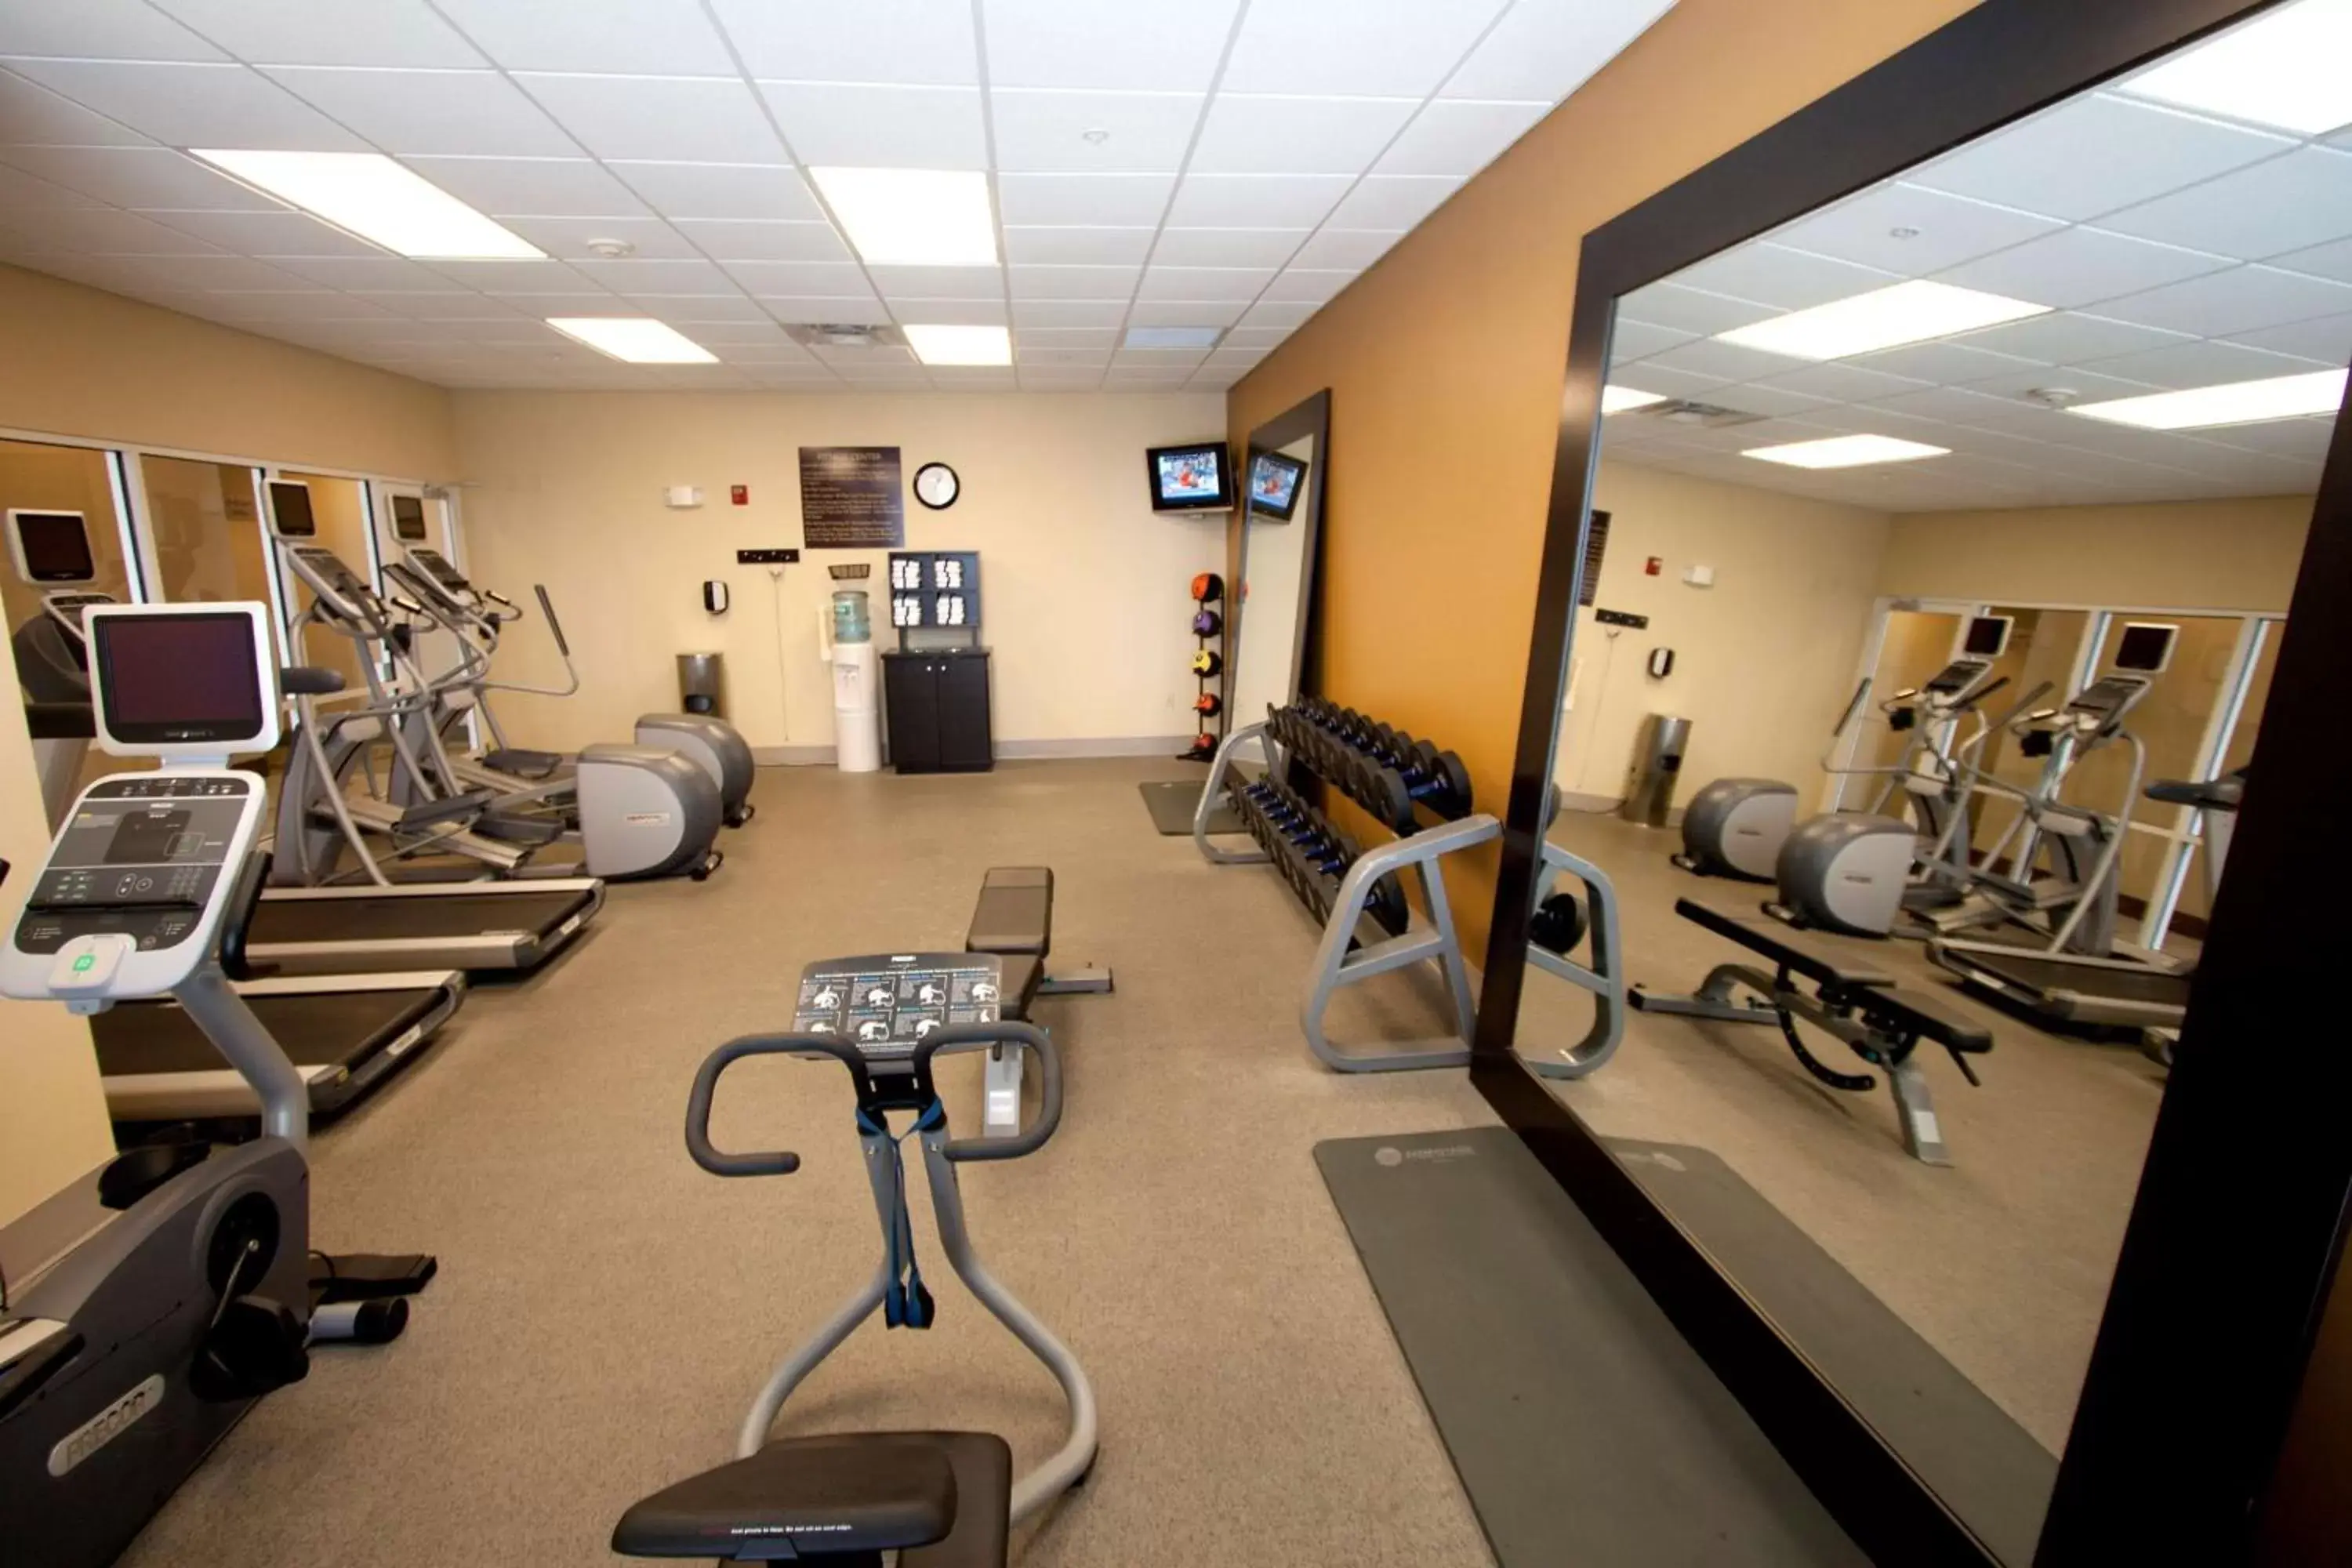 Fitness centre/facilities, Fitness Center/Facilities in Hilton Garden Inn Valdosta